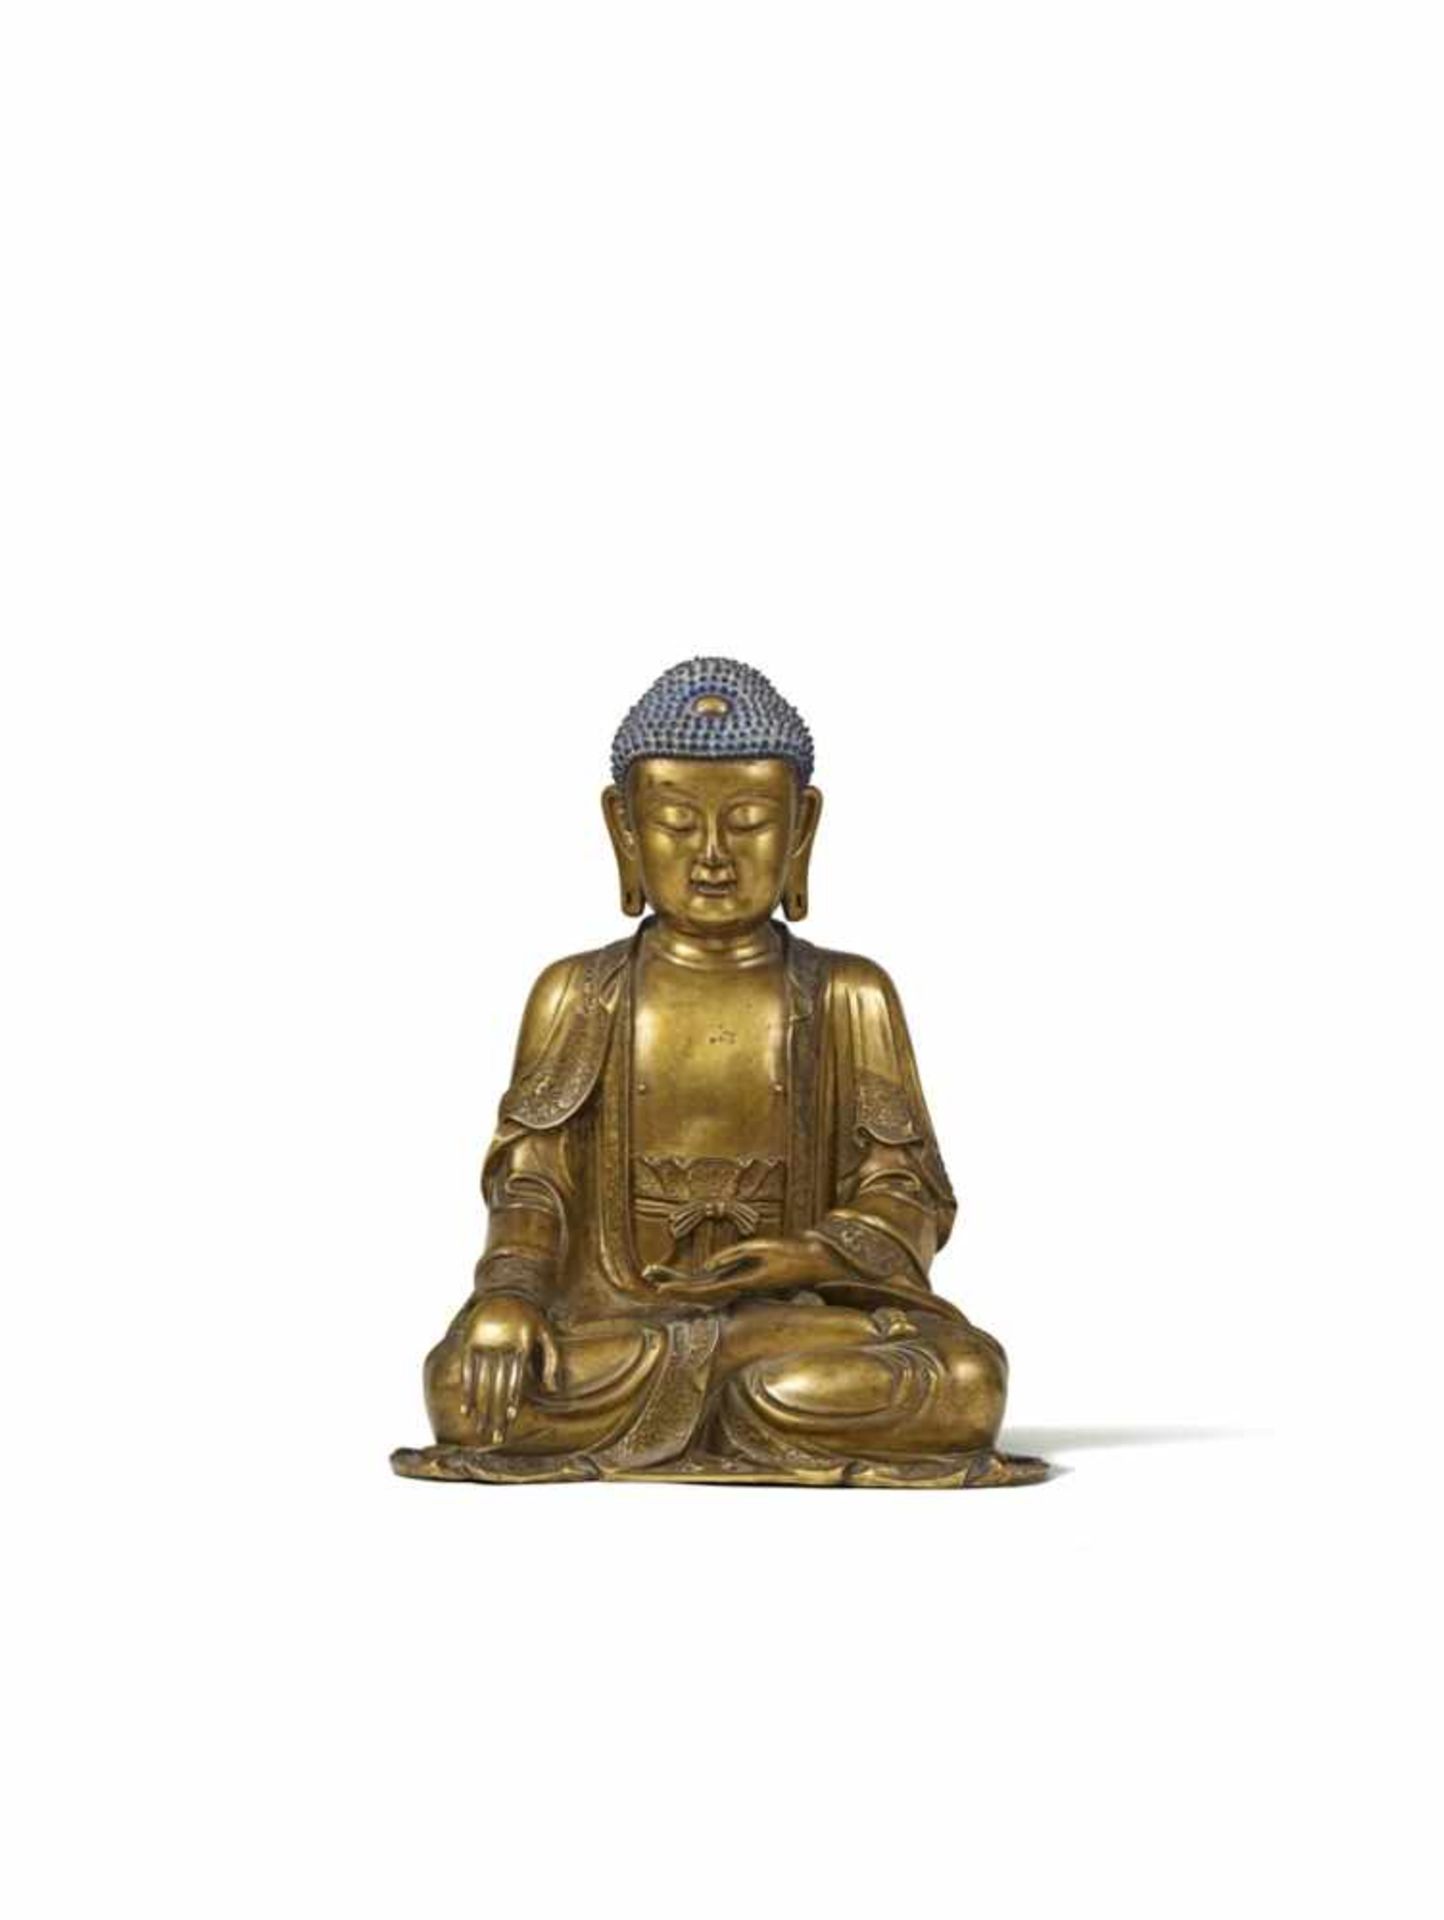 Großer Buddha Shakyamuni. Bronze, vergoldet. Ming-Zeit, 17. Jh.Im Meditationsitz, die rechte Hand in